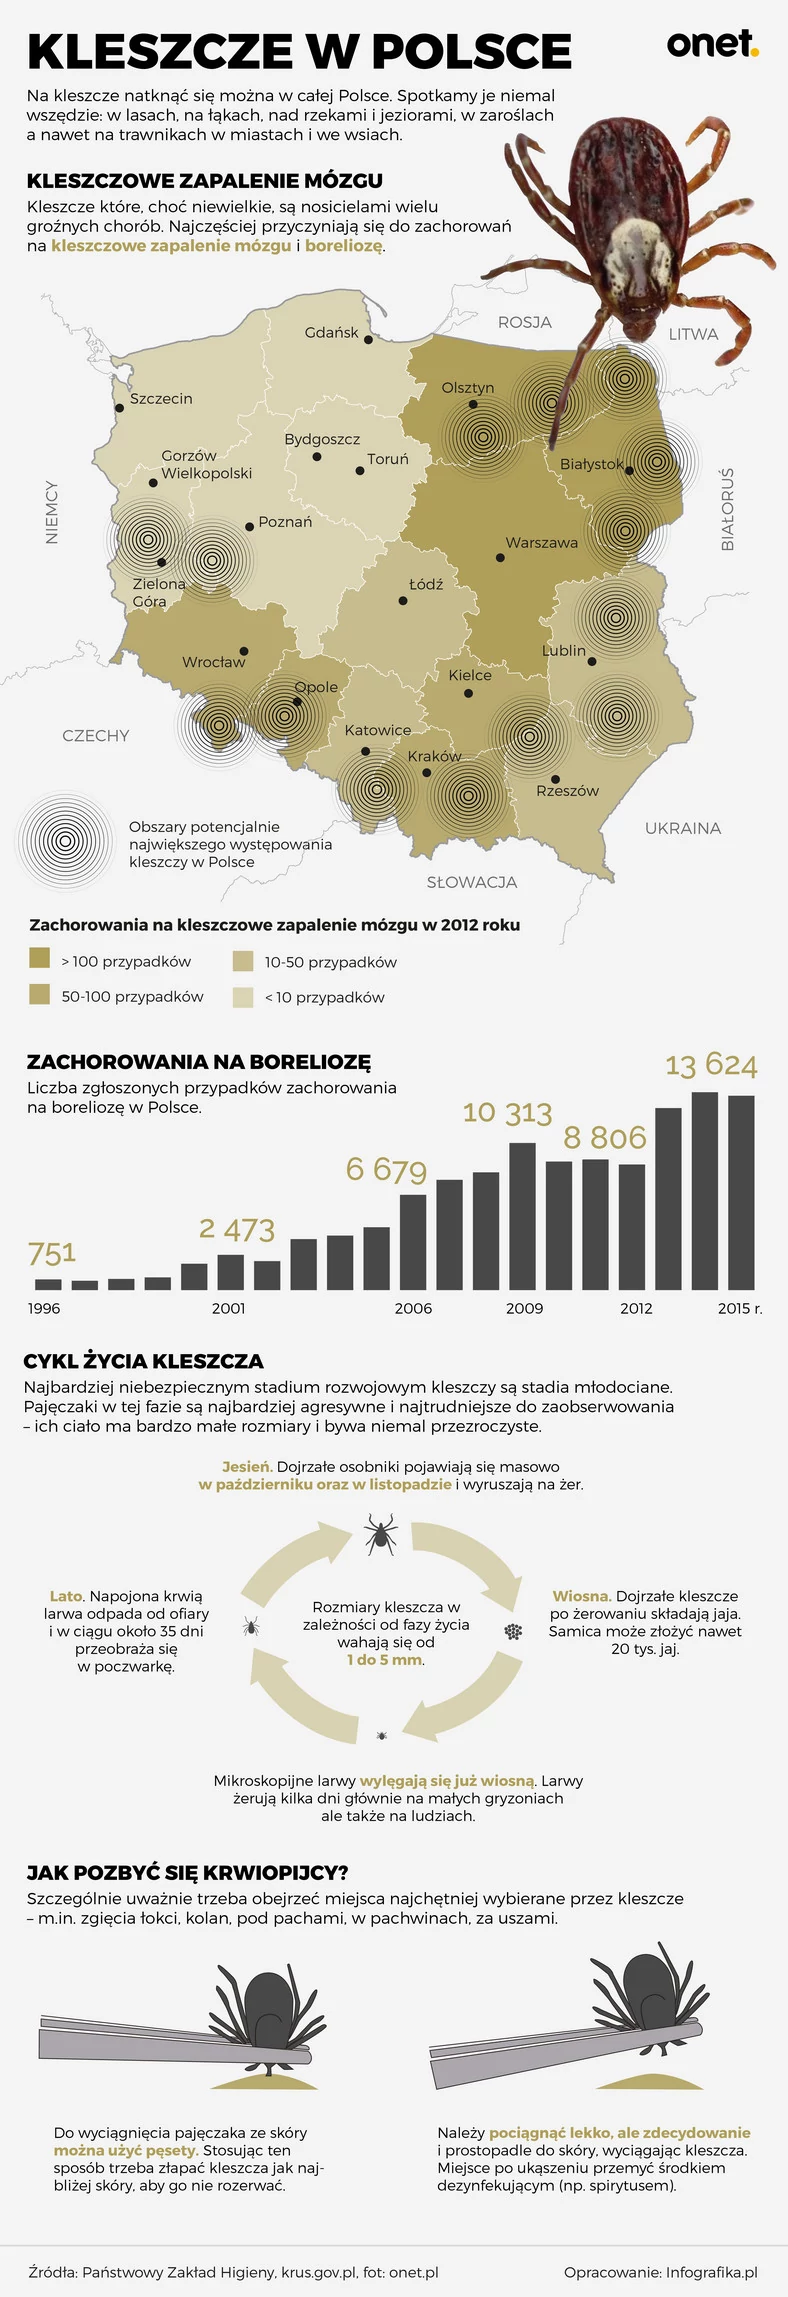 Kleszcze w Polsce - infografika